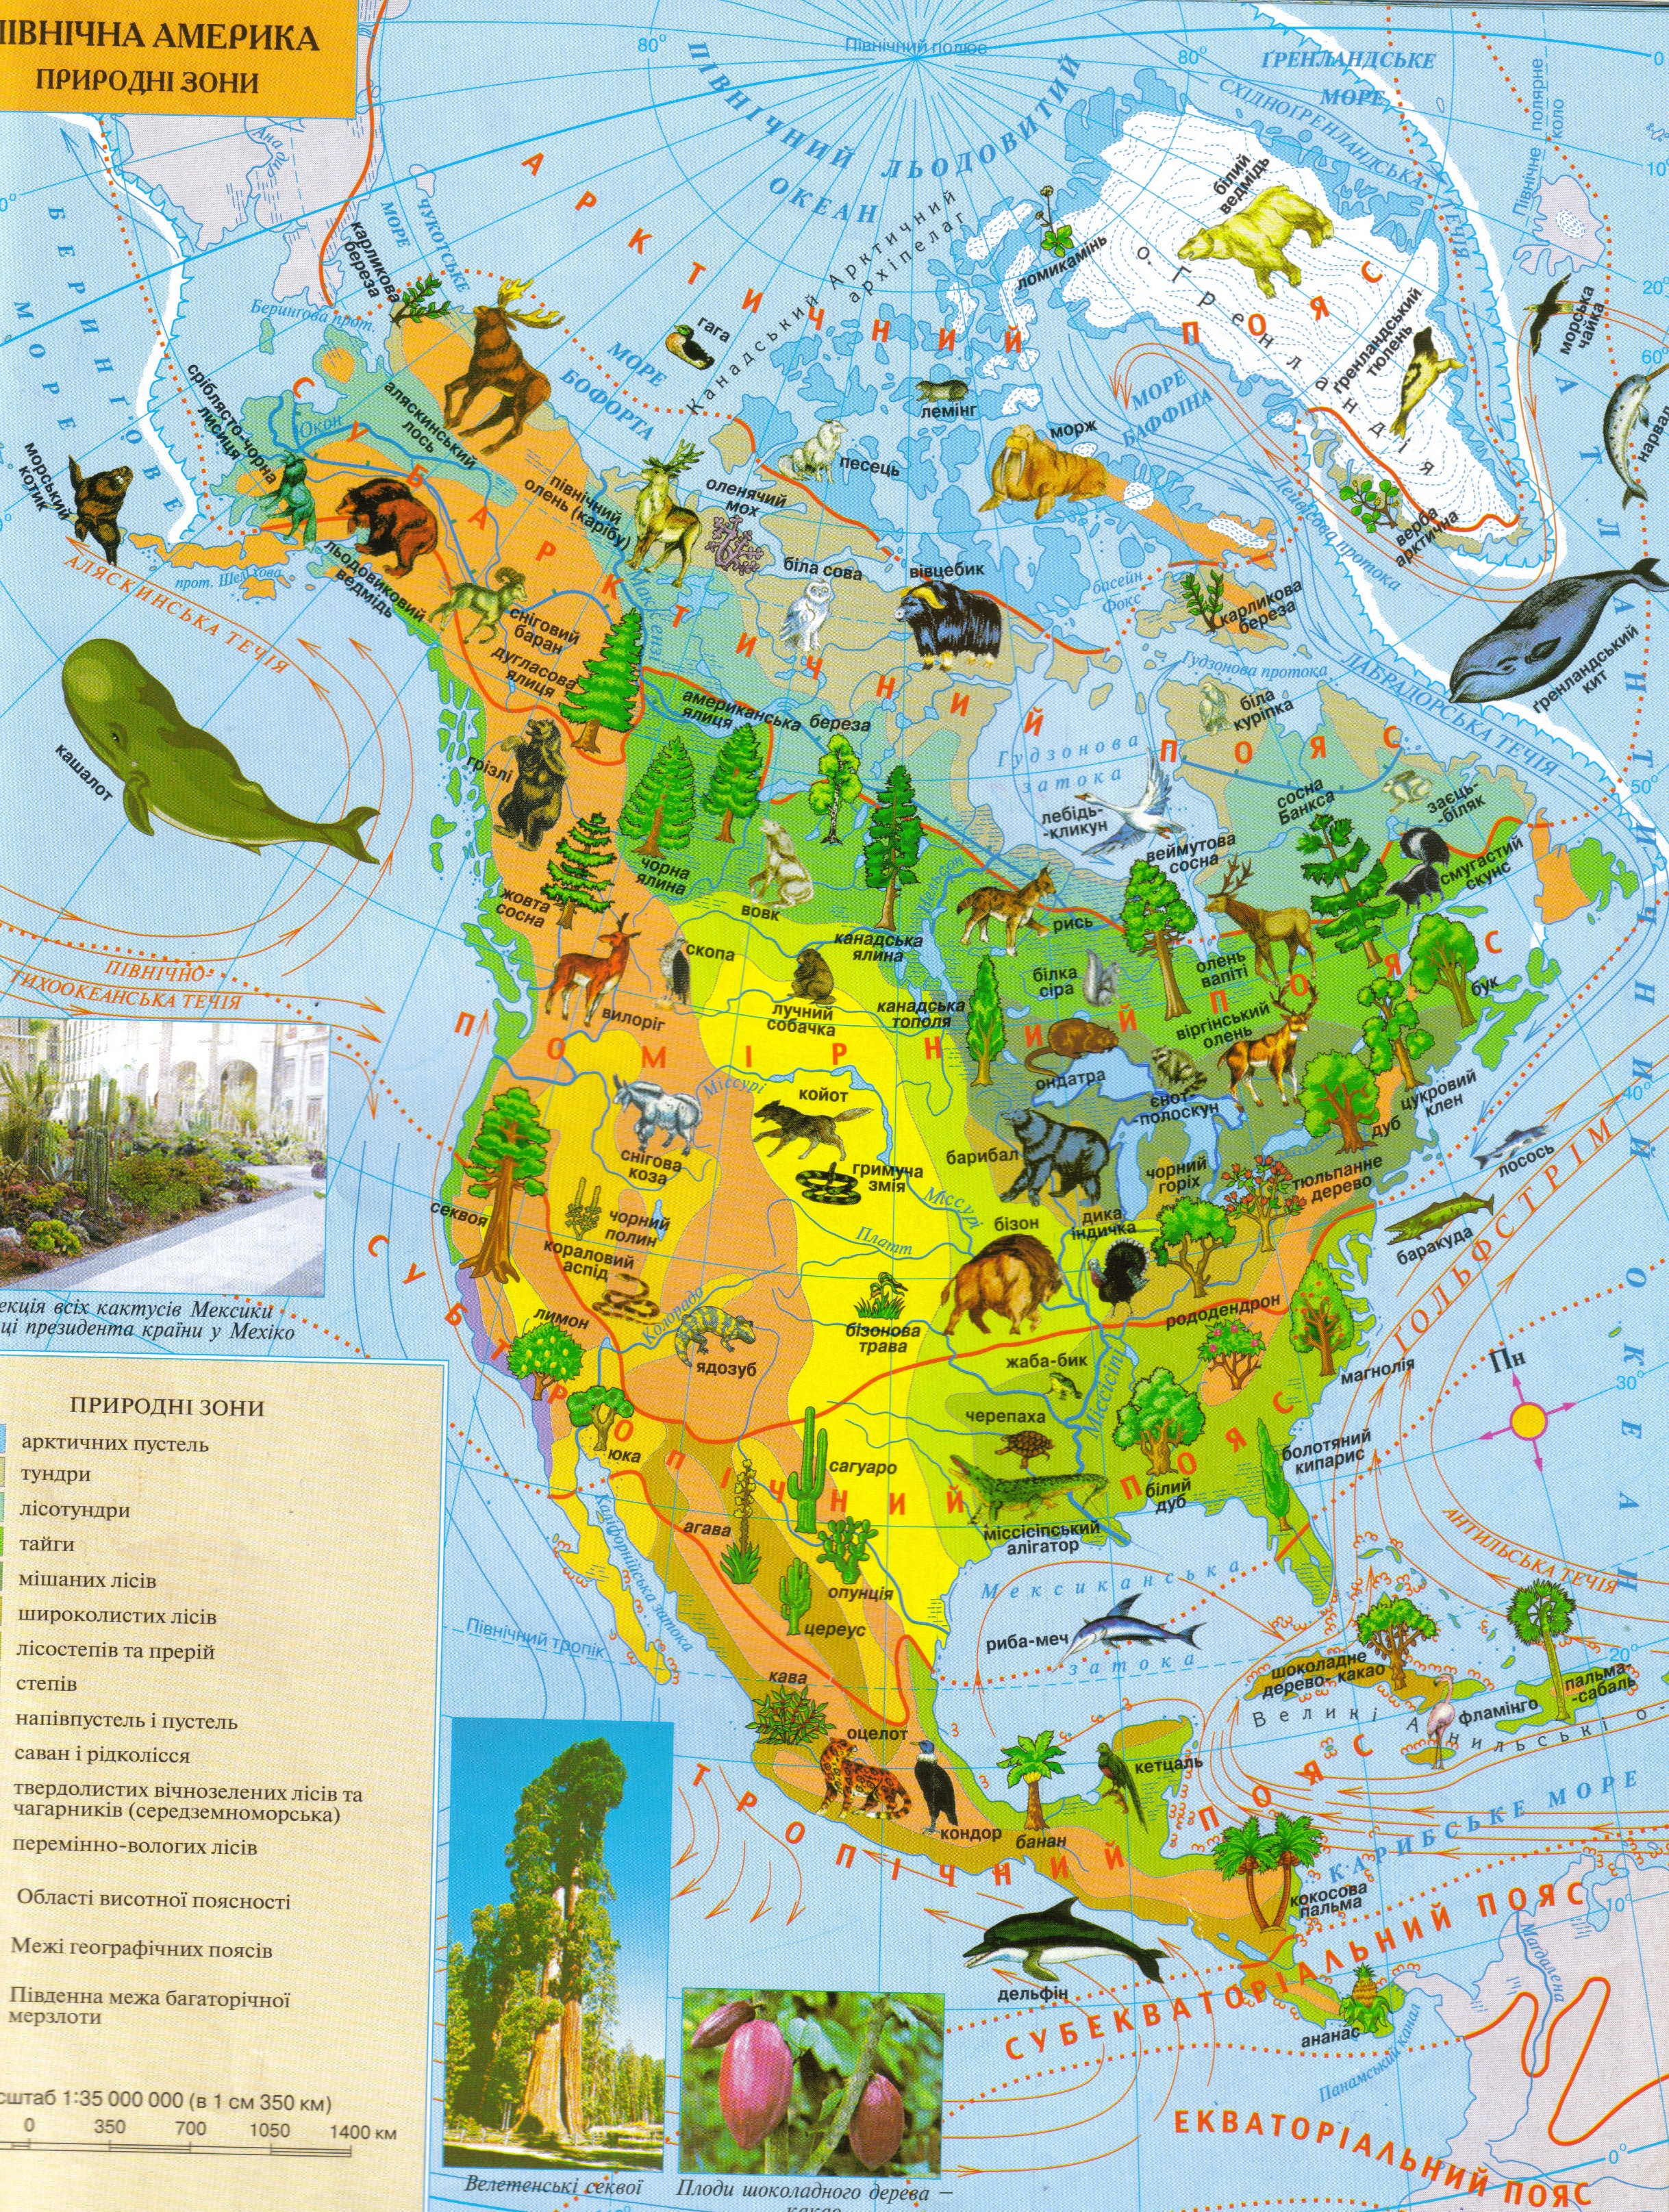 Природная зональность северной америки. Карта растительности Северной Америки. Атлас растительности Северной Америки. Карта природных зон Северной Америки 7 класс география. Растительный мир Северной Америки карта.